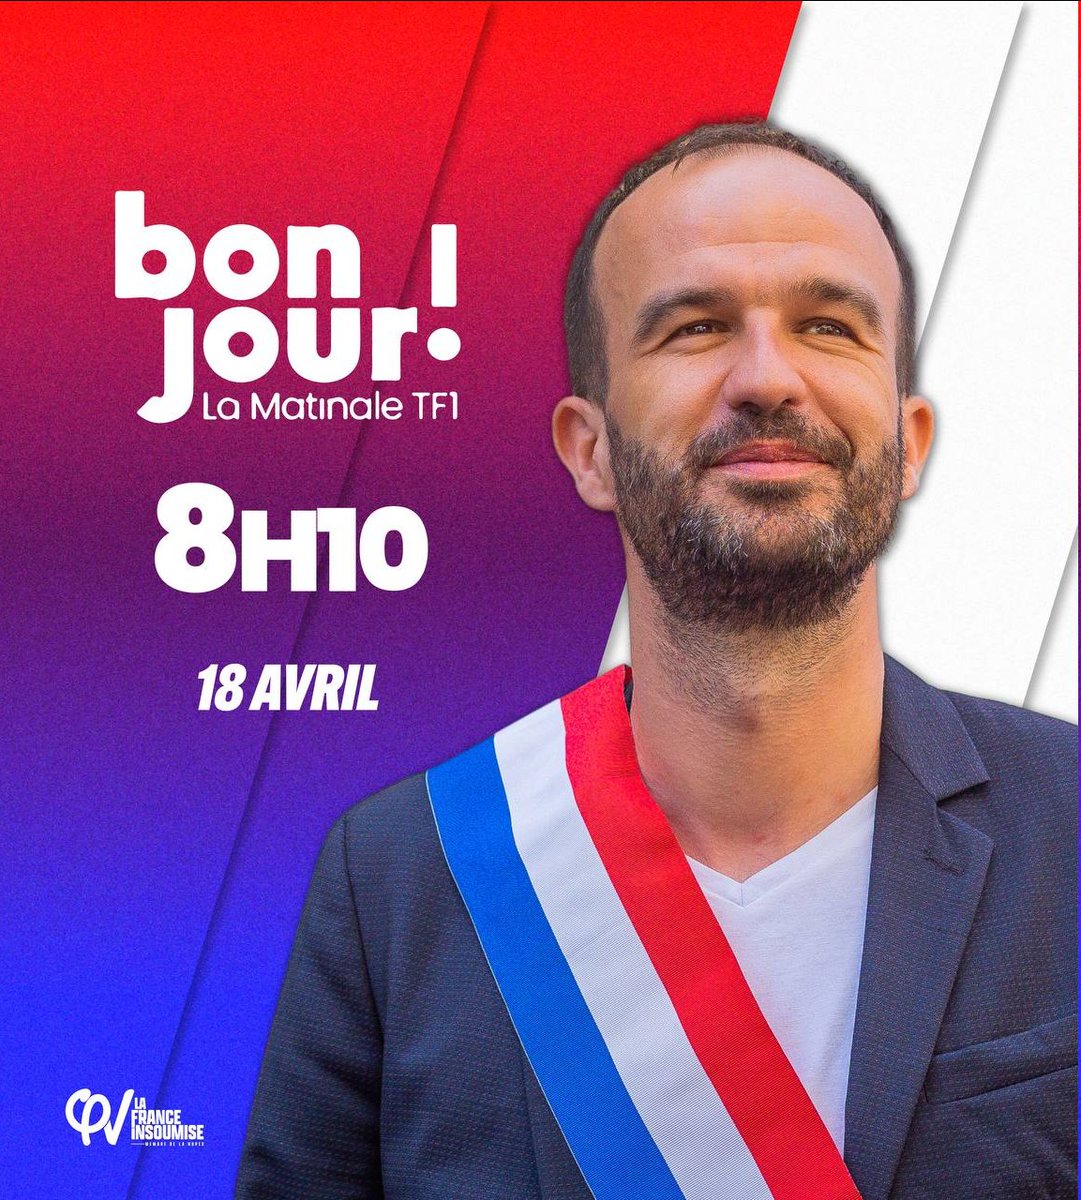 Dans LA MATINALE de Bon jour, à 8h10 sur TF1, le 18 avril.